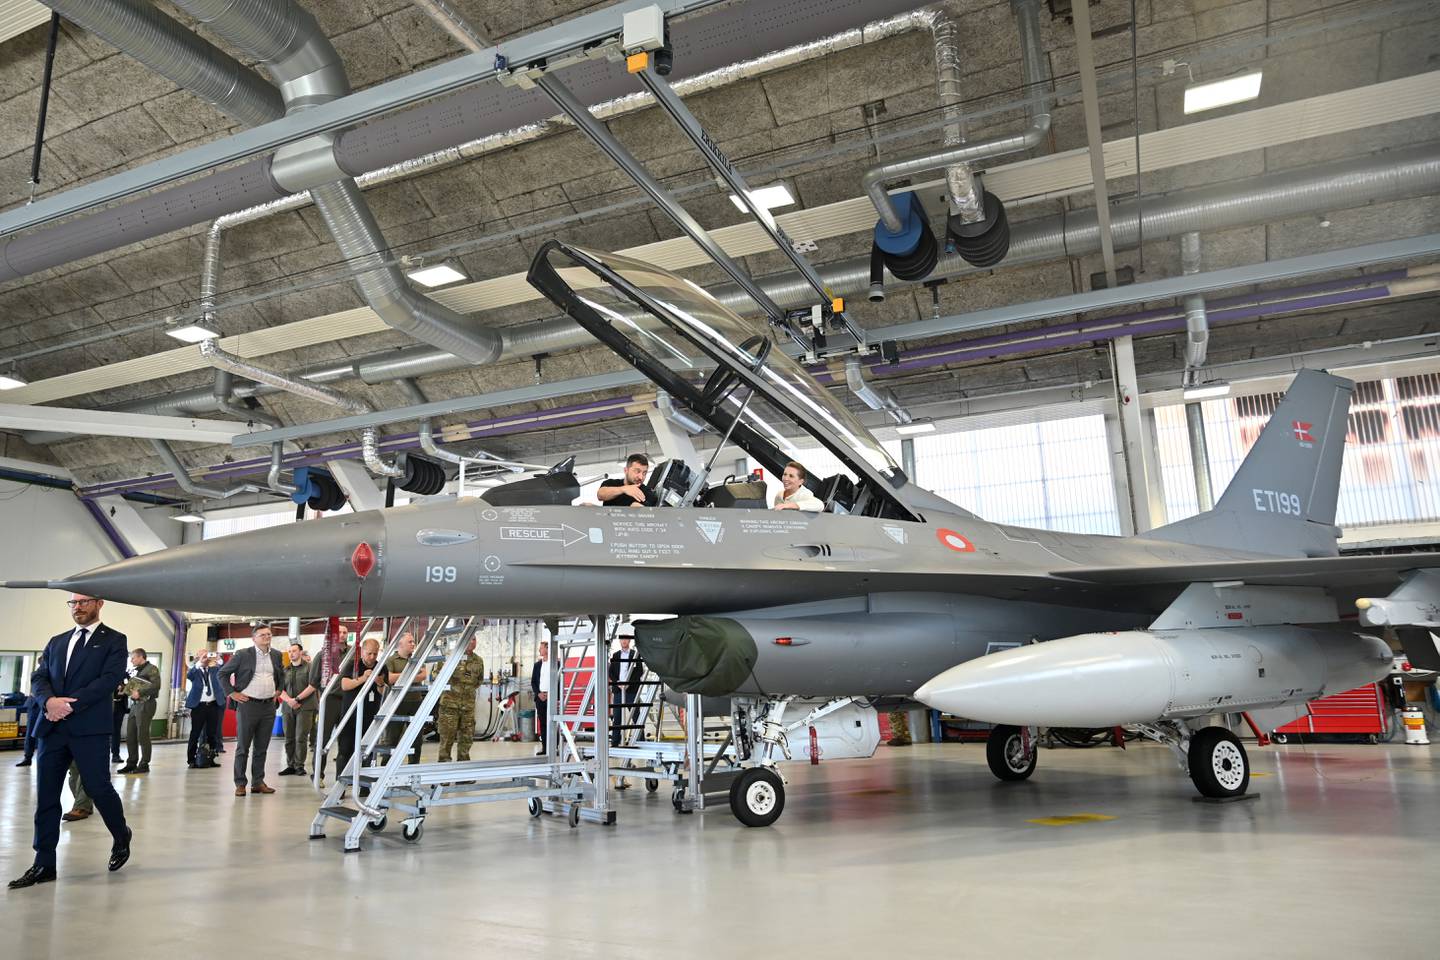 Washington informó a Dinamarca y los Países Bajos que se les permitirá entregar sus aviones de combate F-16 a Ucrania cuando los pilotos del país estén capacitados para operarlos, dijo el Departamento de Estado de Estados Unidos.